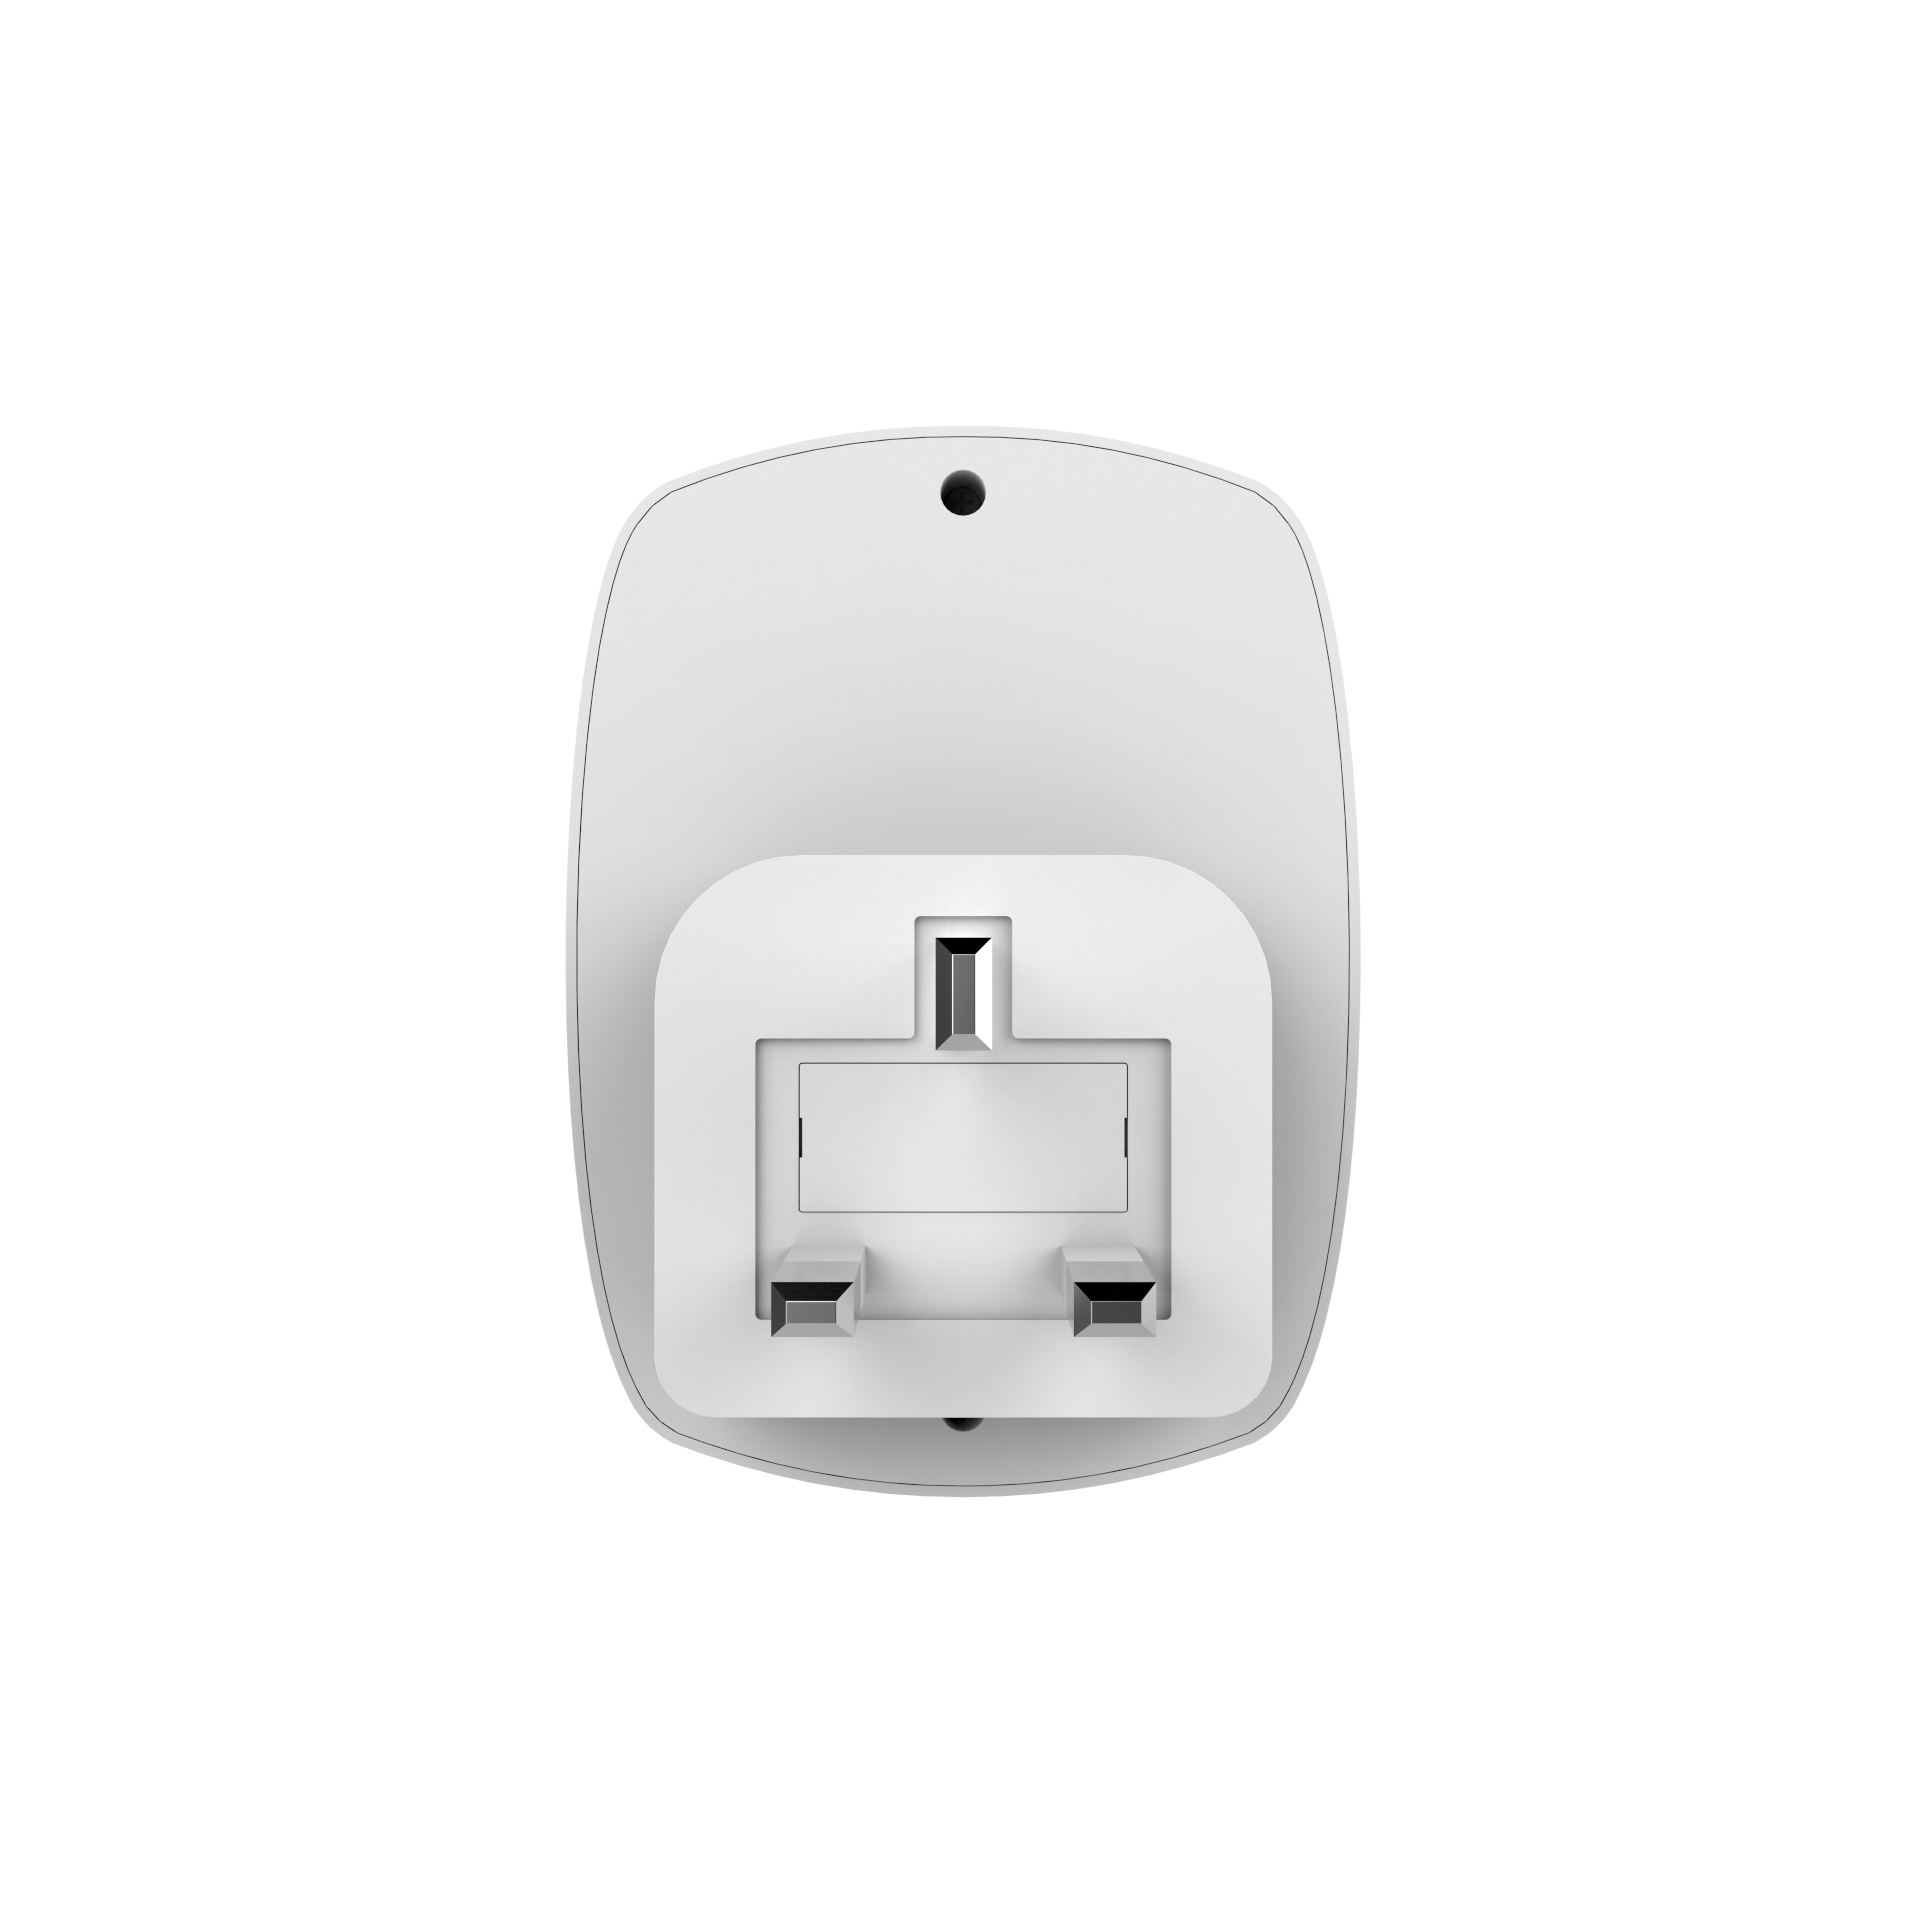 Heatmiser neoPlug - Smart Plug